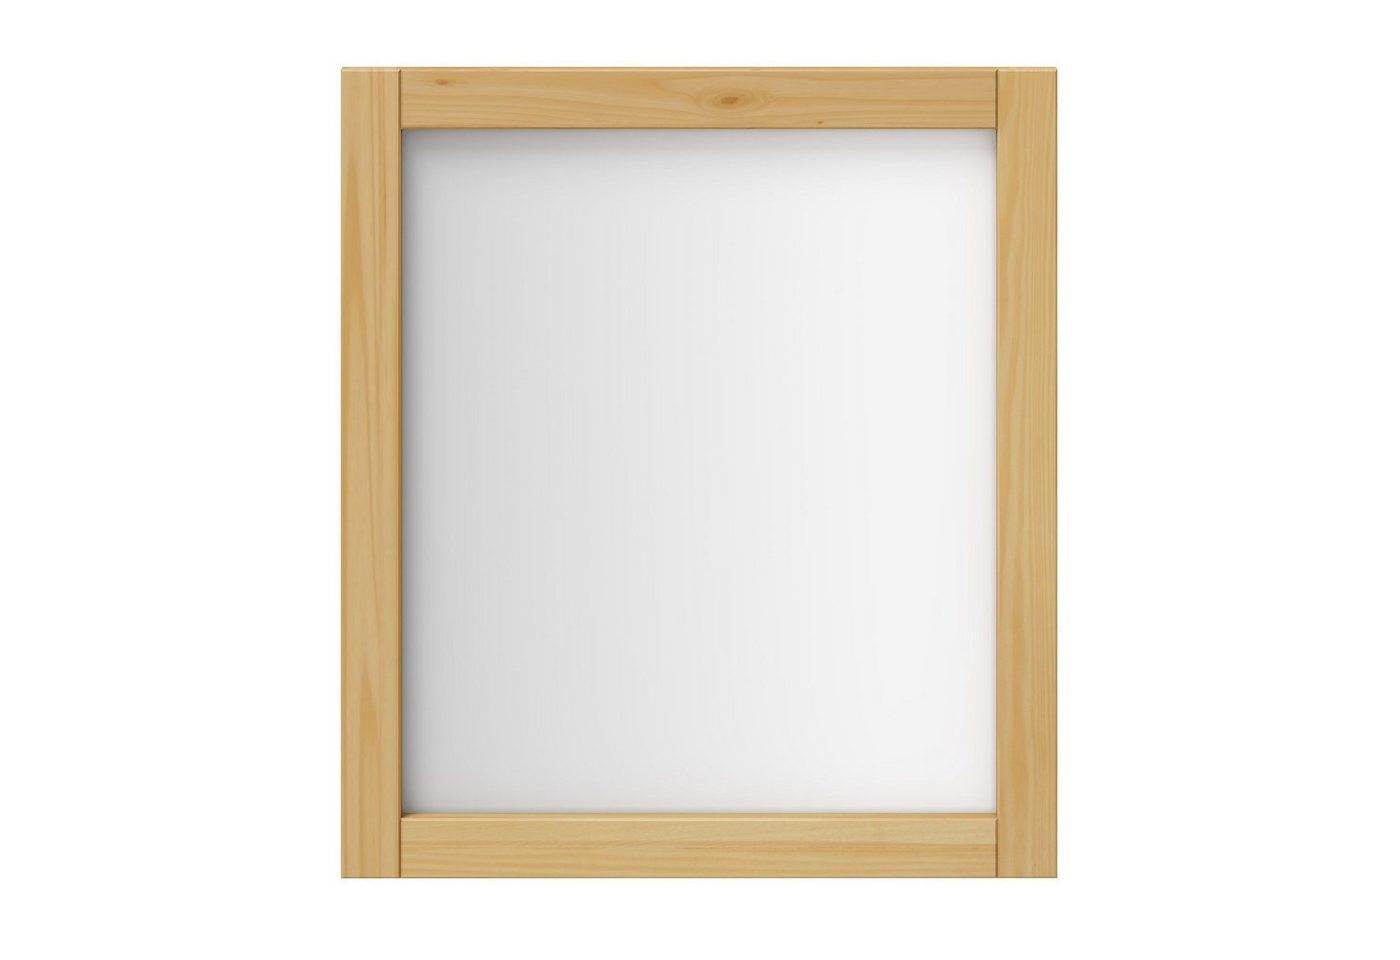 Woodroom Spiegel Sevilla, Kiefer massiv eichefarig lackiert, BxHxT 62x70x3 cm von Woodroom